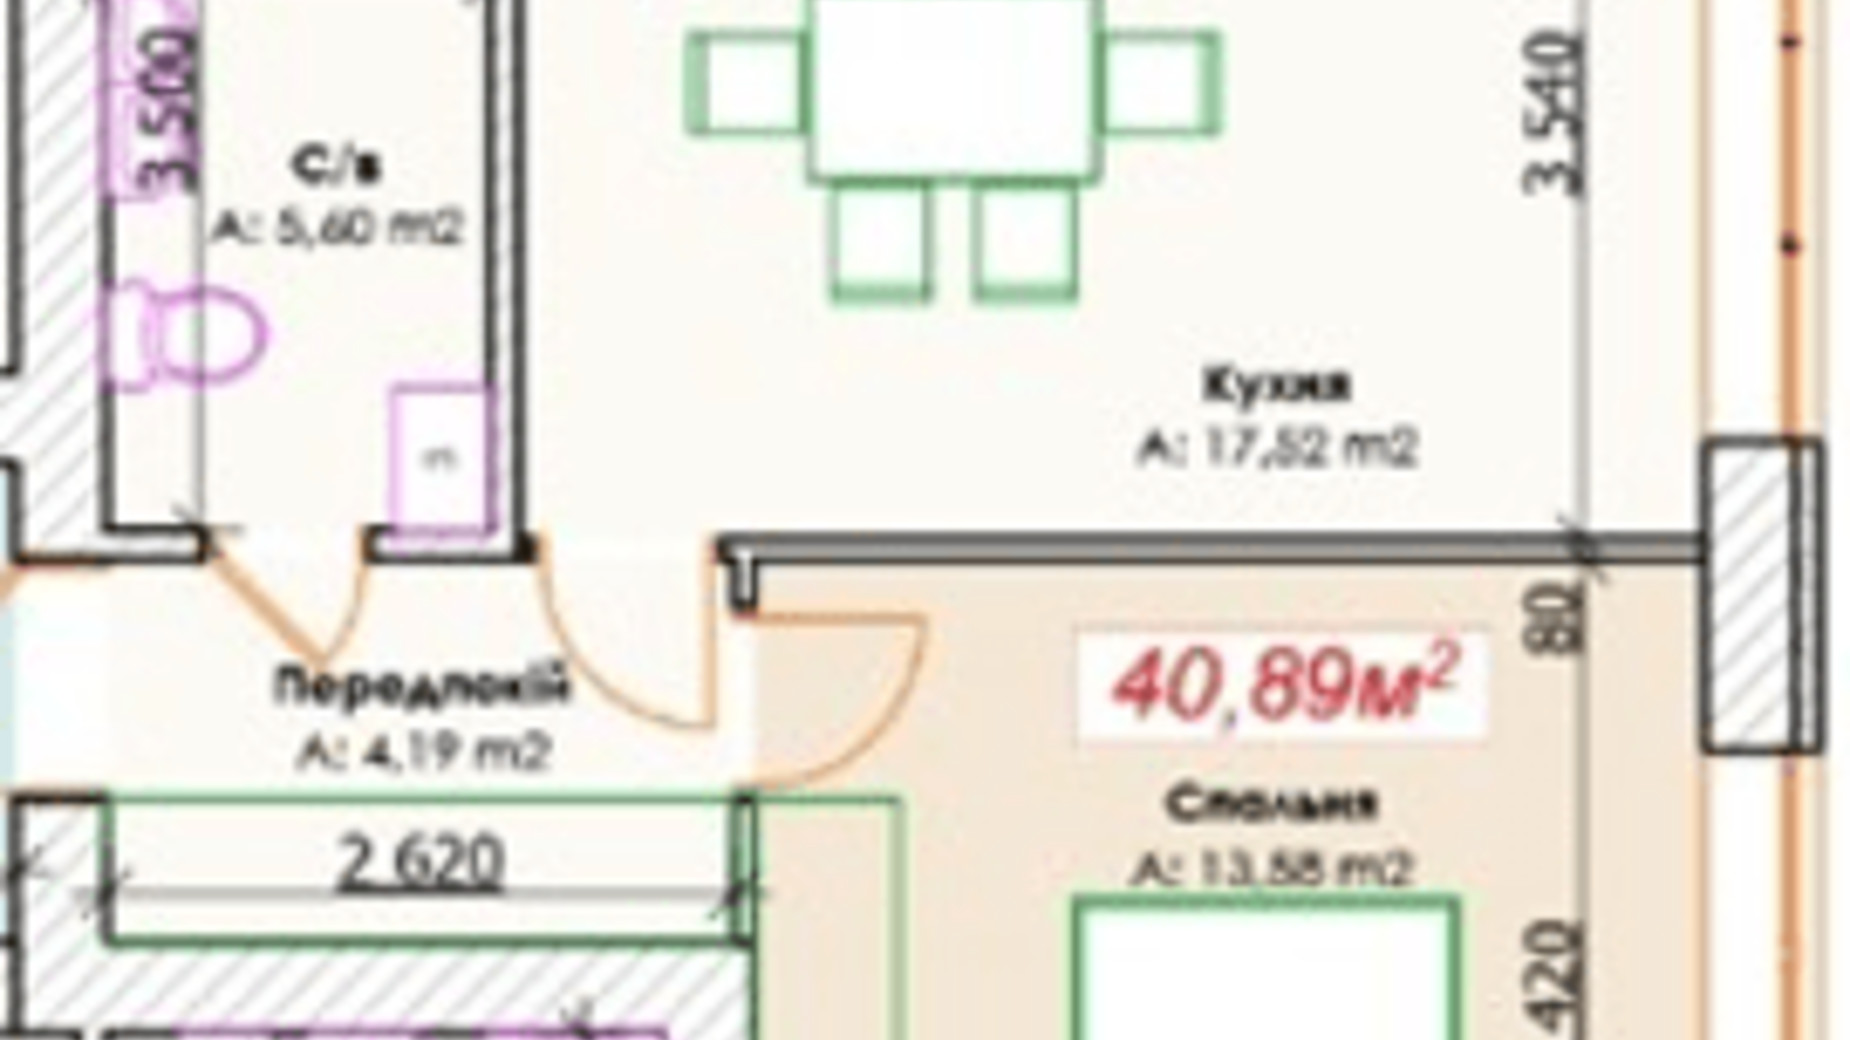 Планировка 1-комнатной квартиры в КД GoodHome 40.89 м², фото 375895